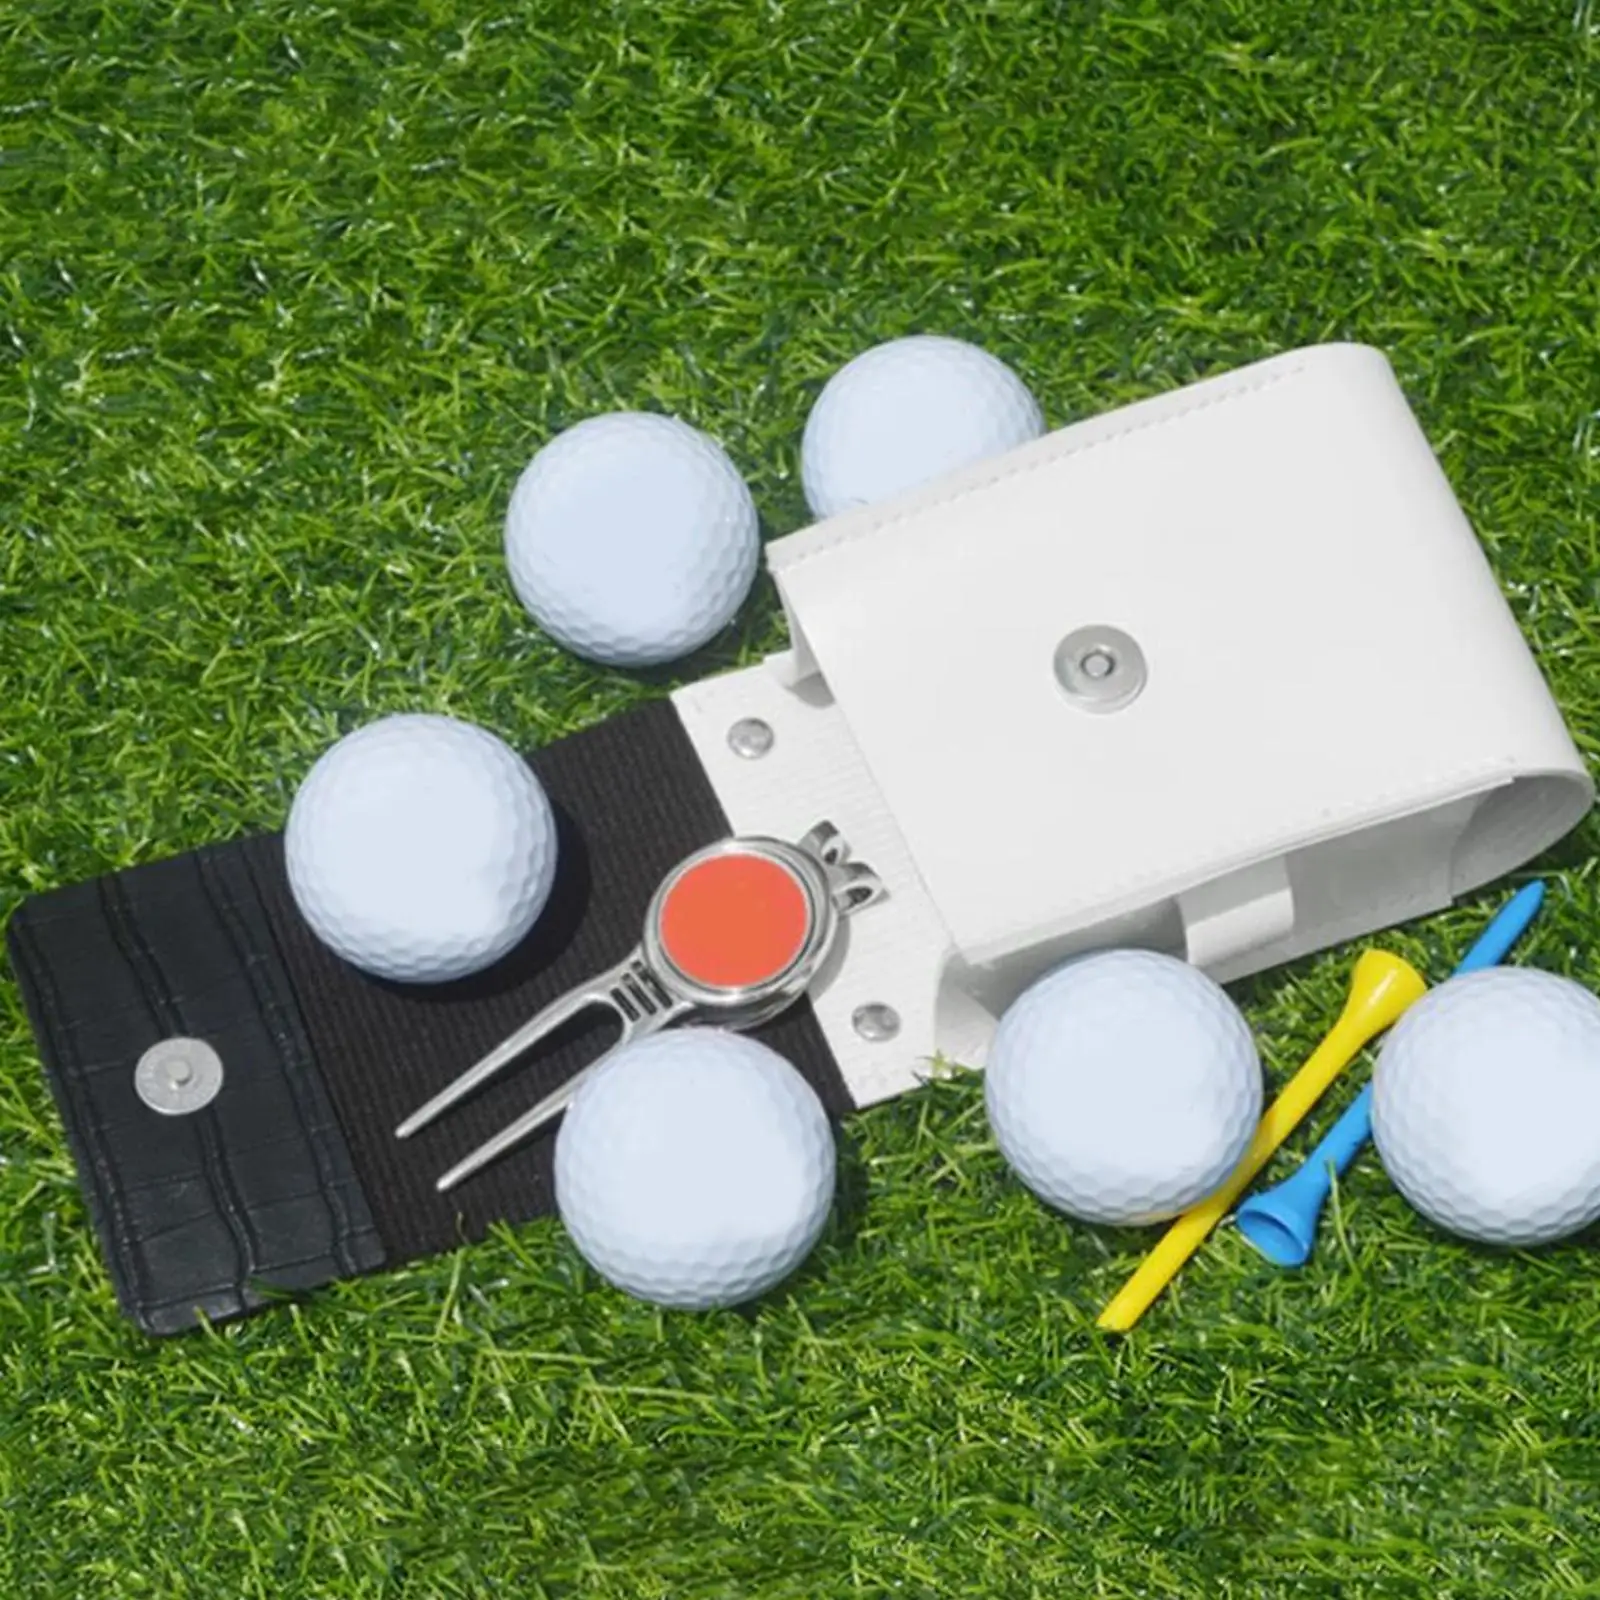 Golf Rangefinder Case Protector Range Finder Carry Bag Lightweight Pouch Portable Golf Waist Bag for Tee Holder